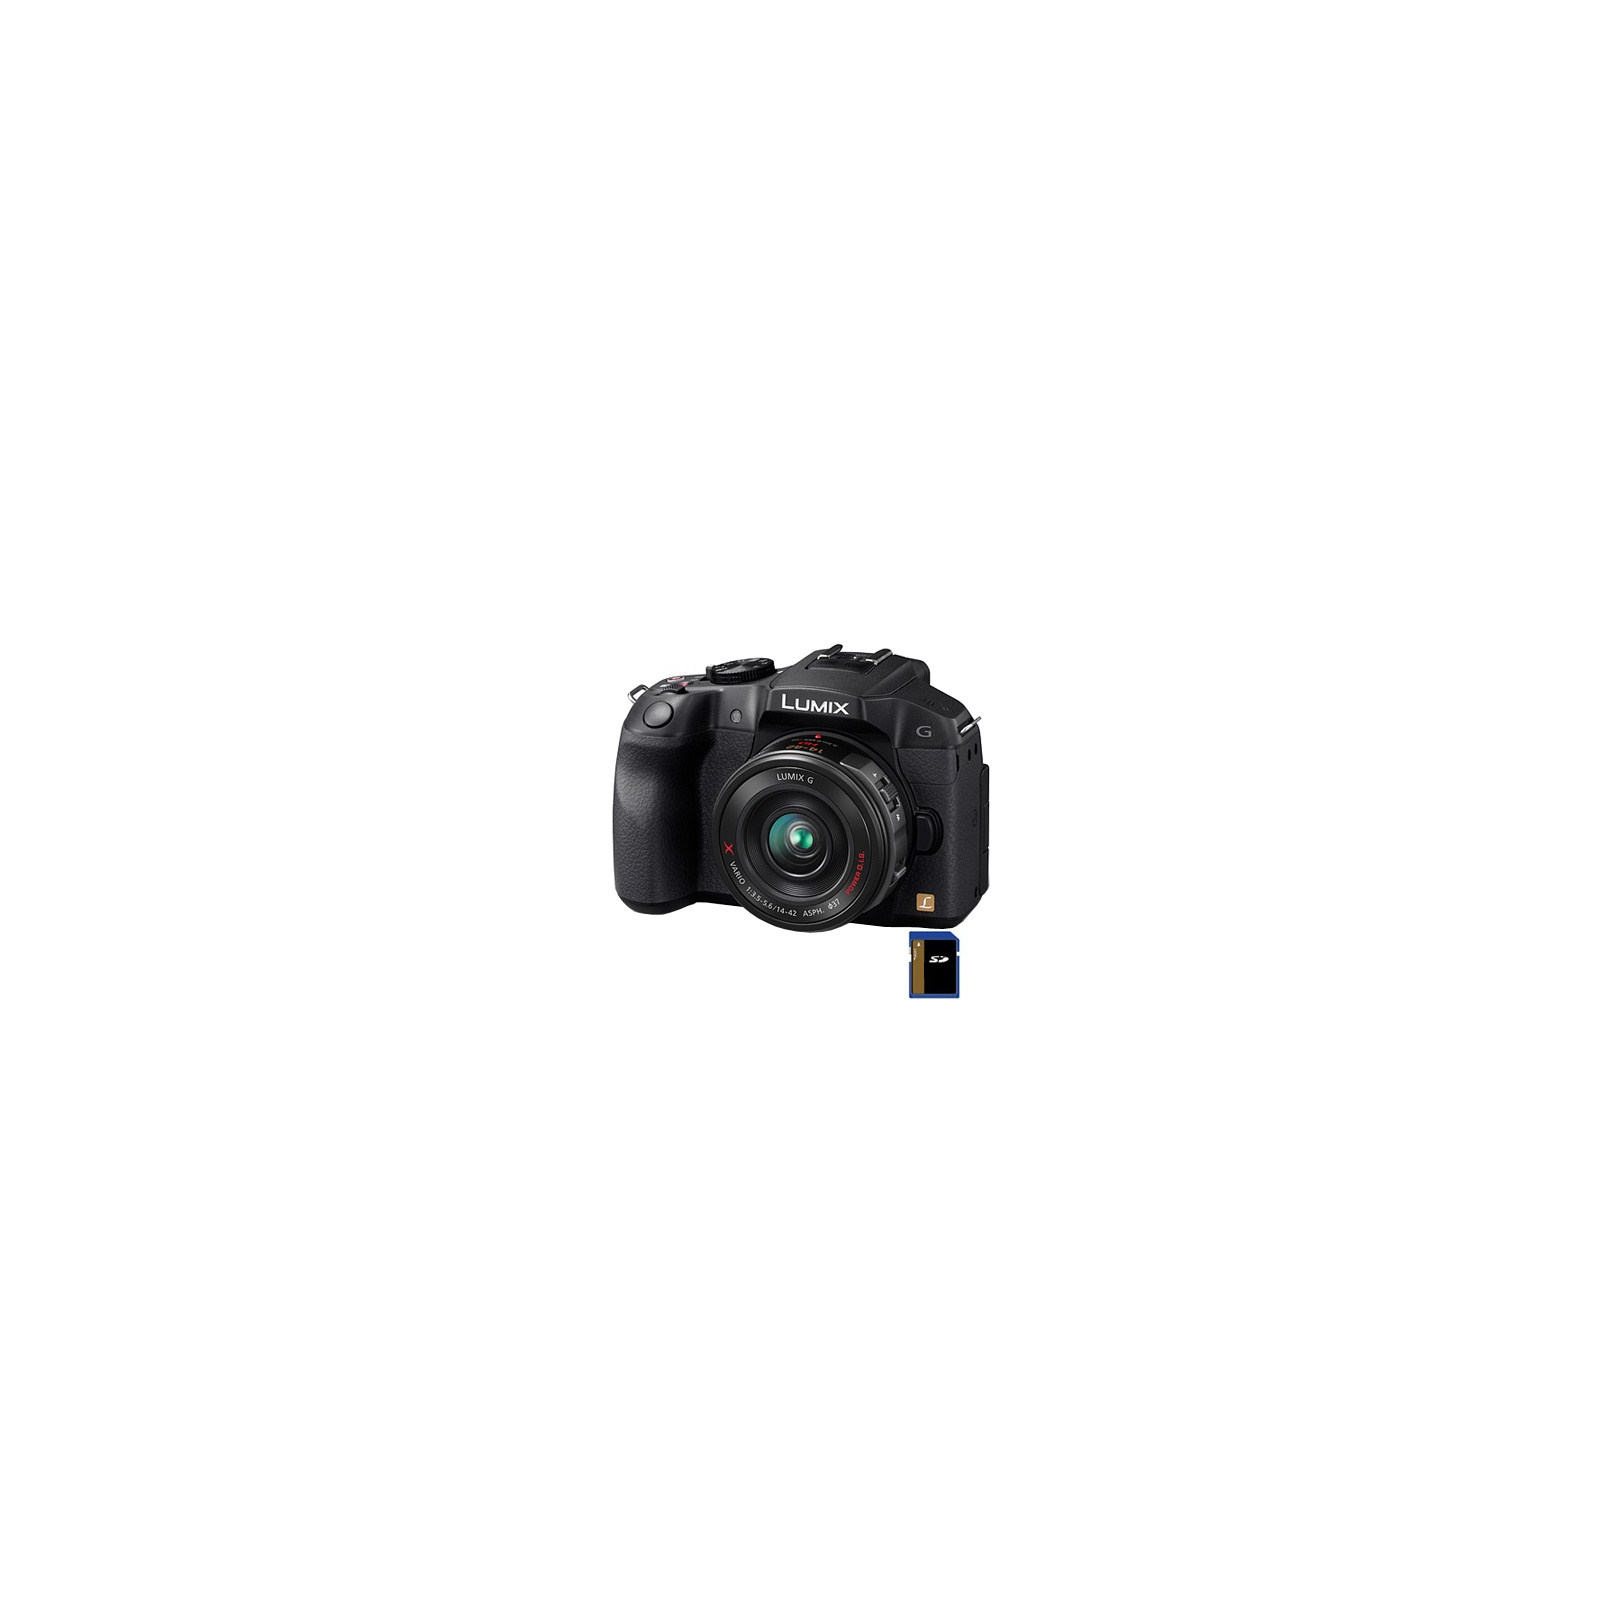 Цифровой фотоаппарат Panasonic DMC-G6X black 14-42 kit (DMC-G6XEE-K)